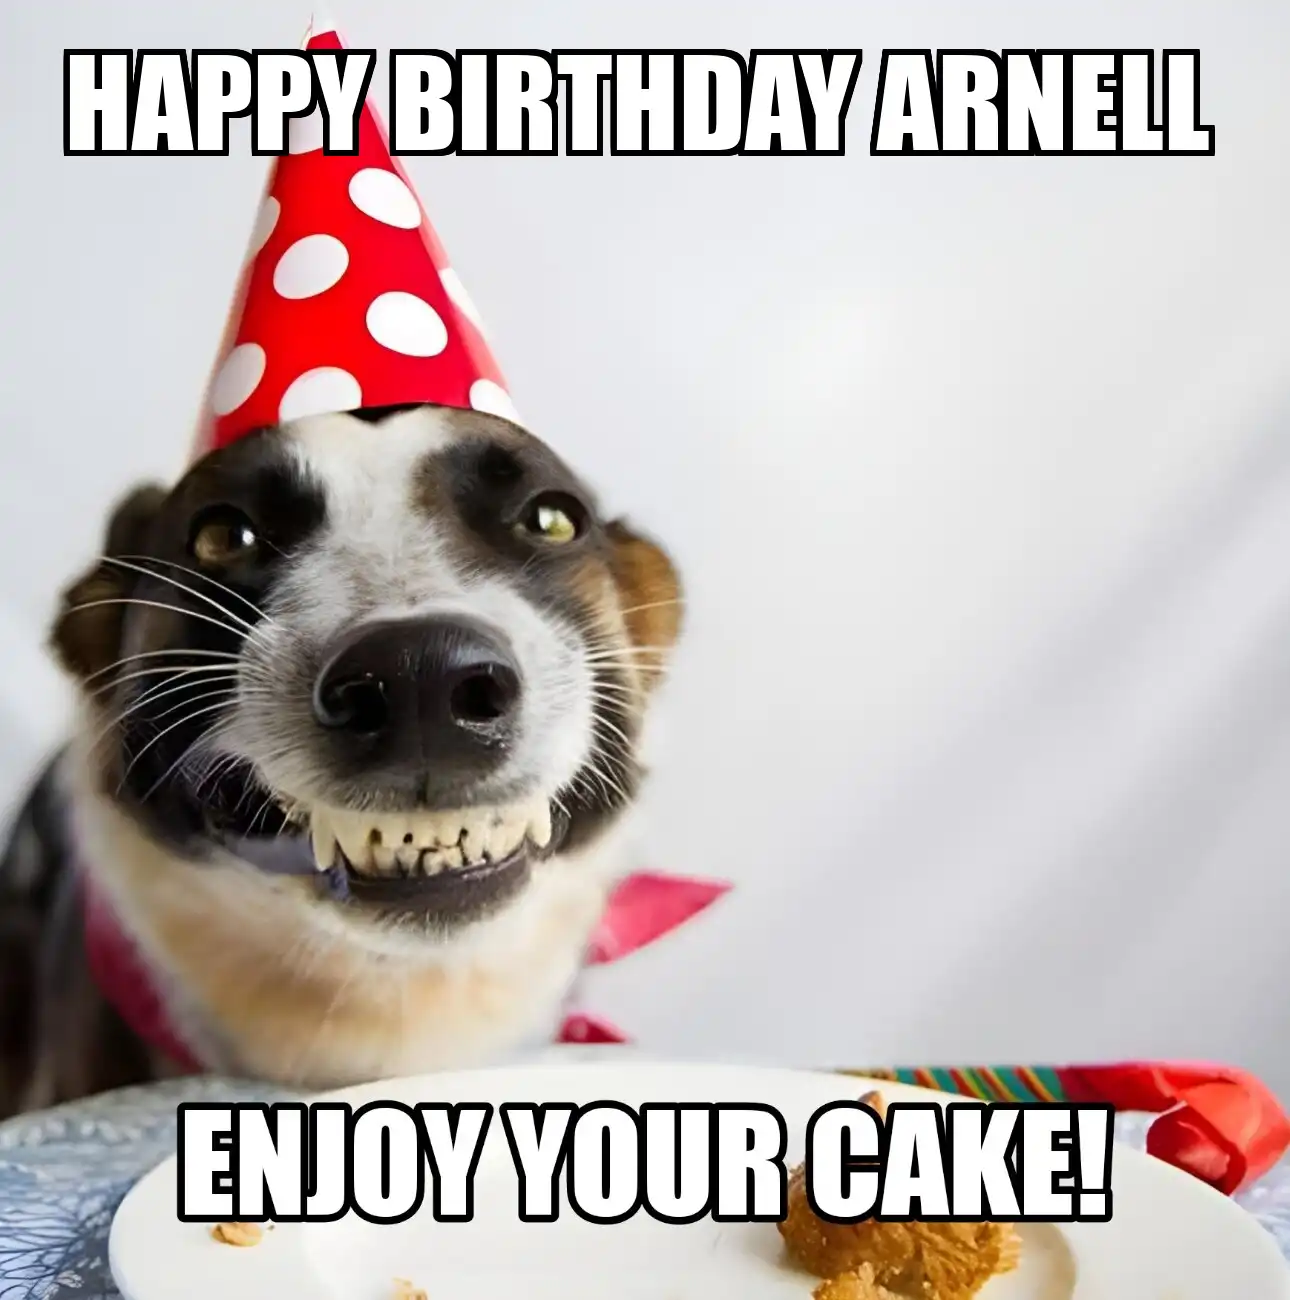 Happy Birthday Arnell Enjoy Your Cake Dog Meme